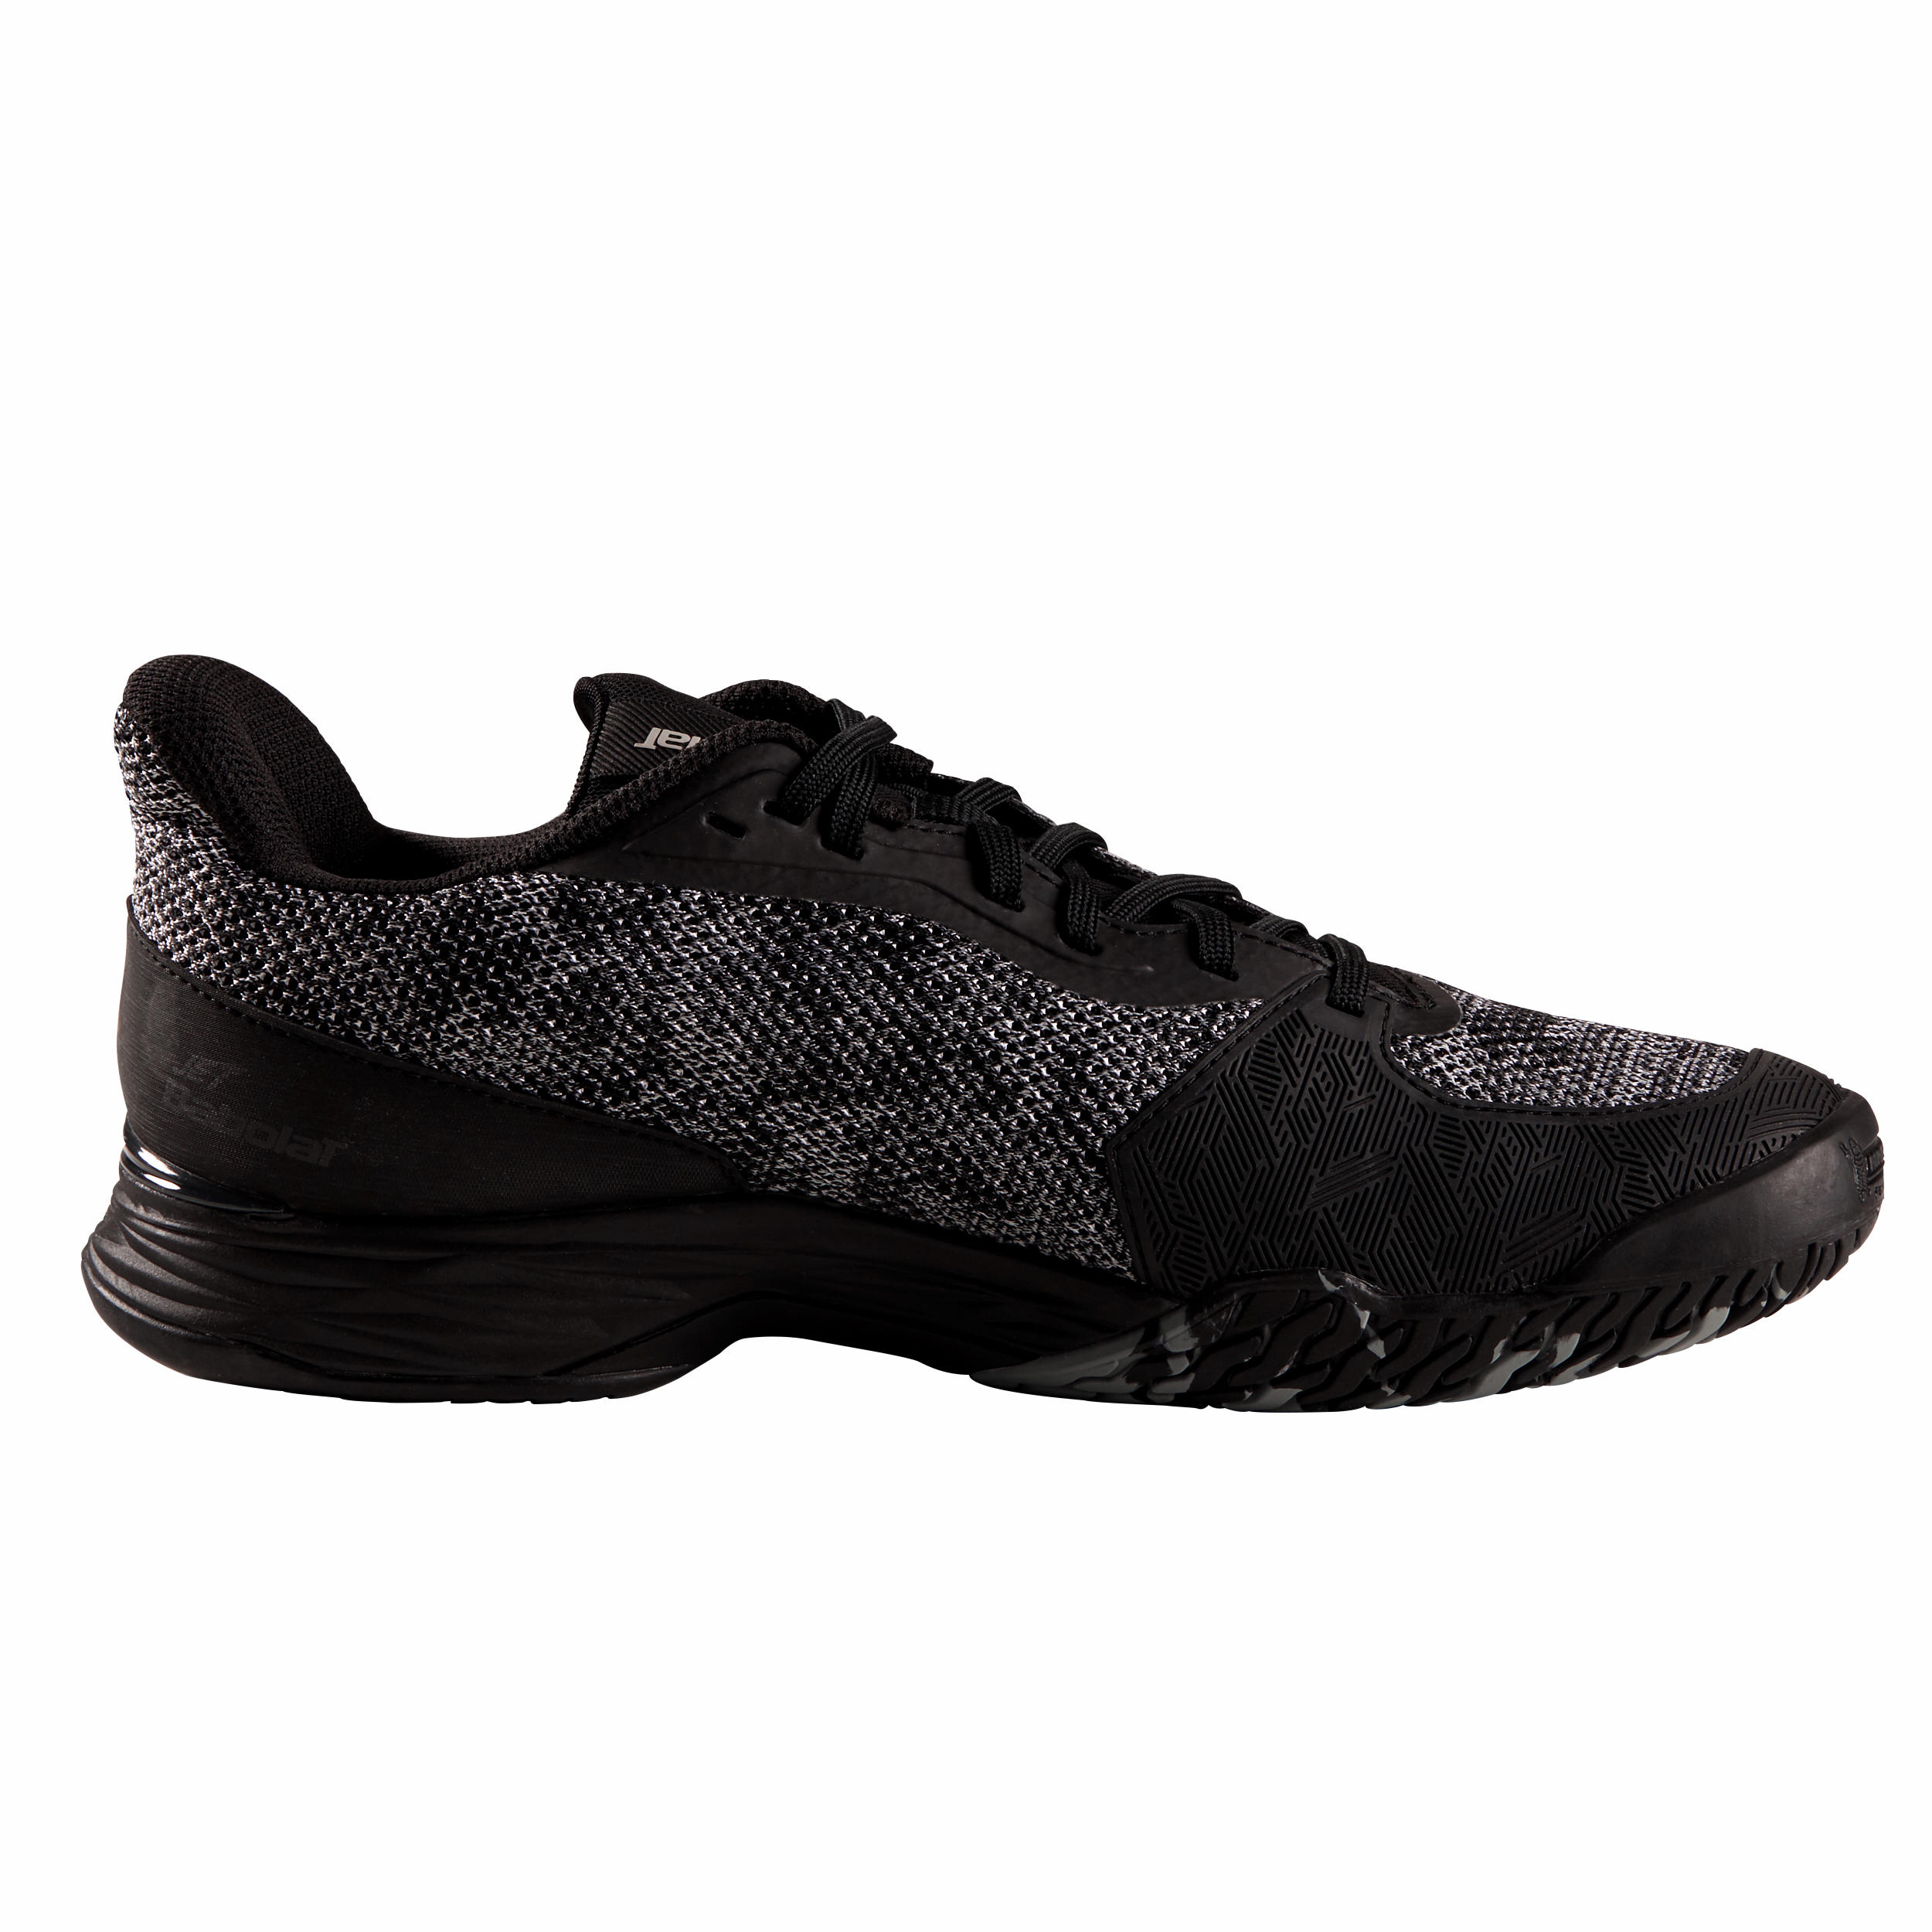 Men's Multi-Court Tennis Shoes Jet Tere - Black/Grey 2/5